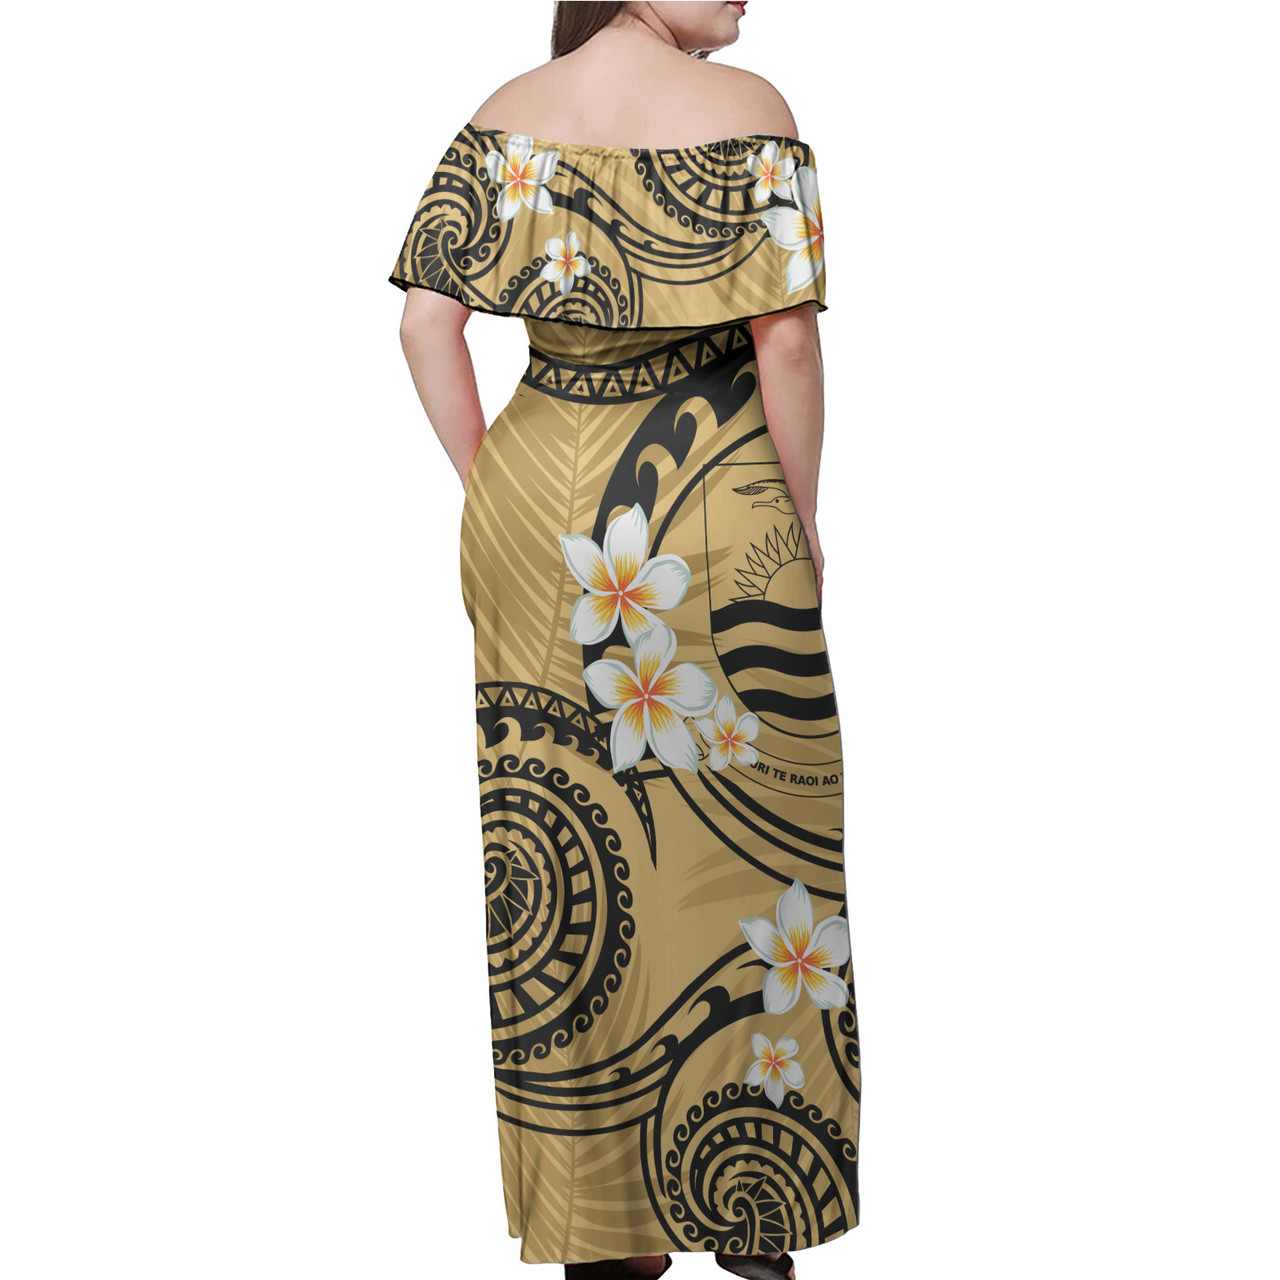 Kiribati Off Shoulder Long Dress Plumeria Flowers Tribal Motif Yellow Version